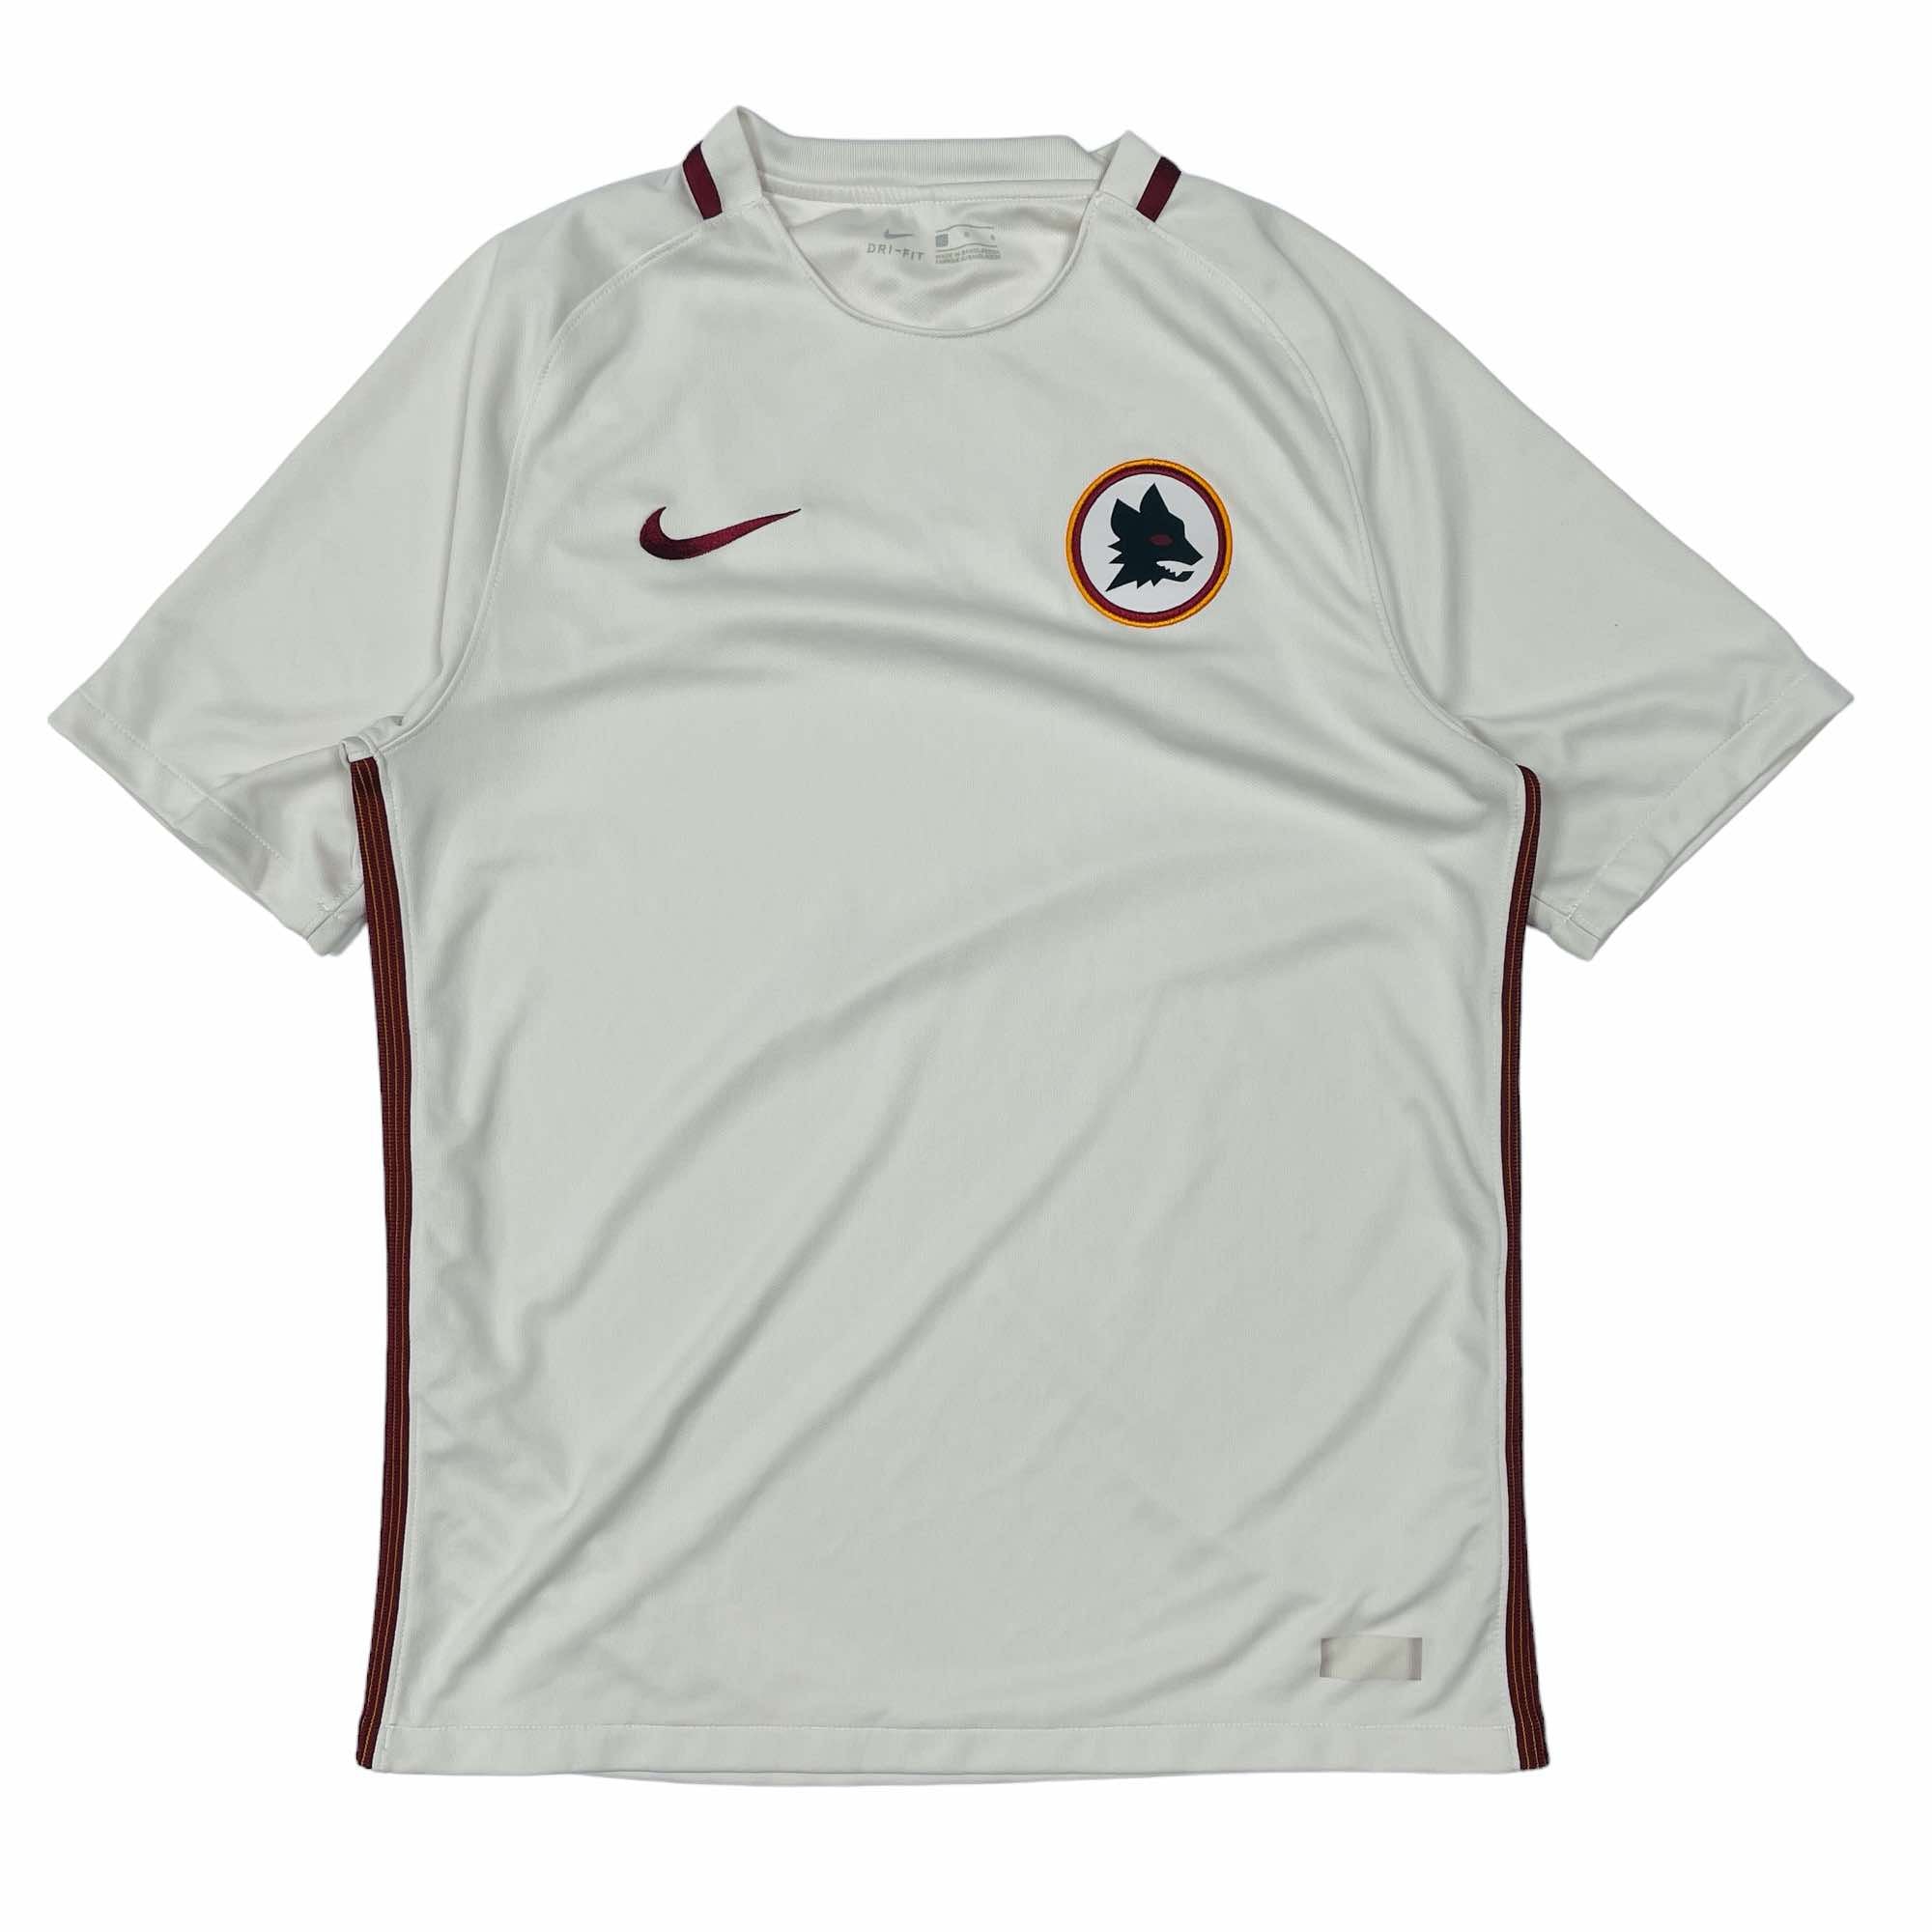 AS Roma 2016/17 Nike Shirt - Large